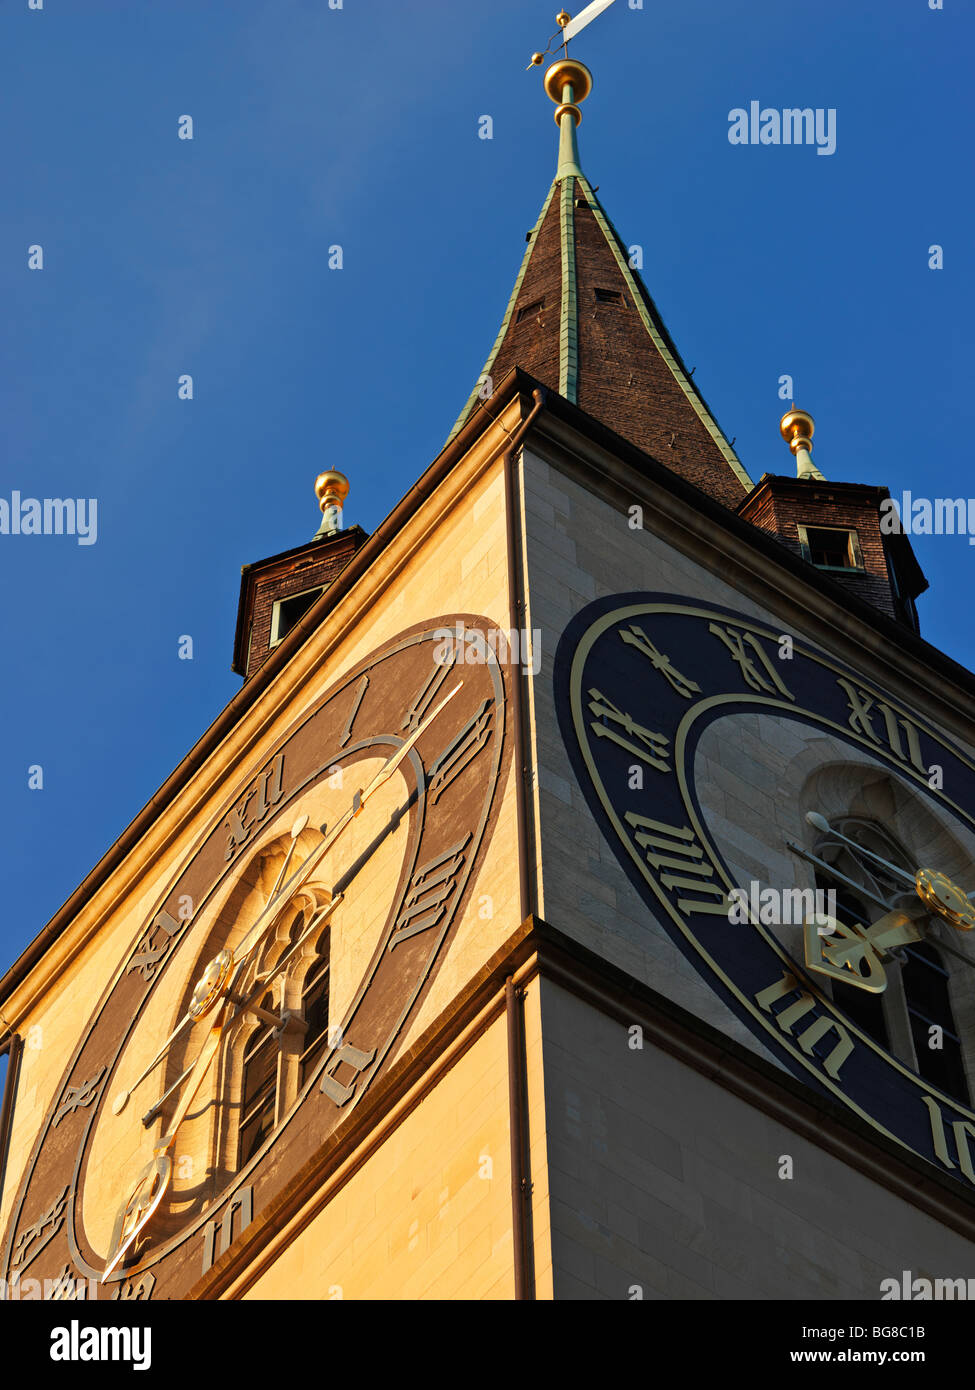 Suisse, Zurich, St. Peter's Church Clock Tower, la plus ancienne église paroissiale de Zurich Banque D'Images